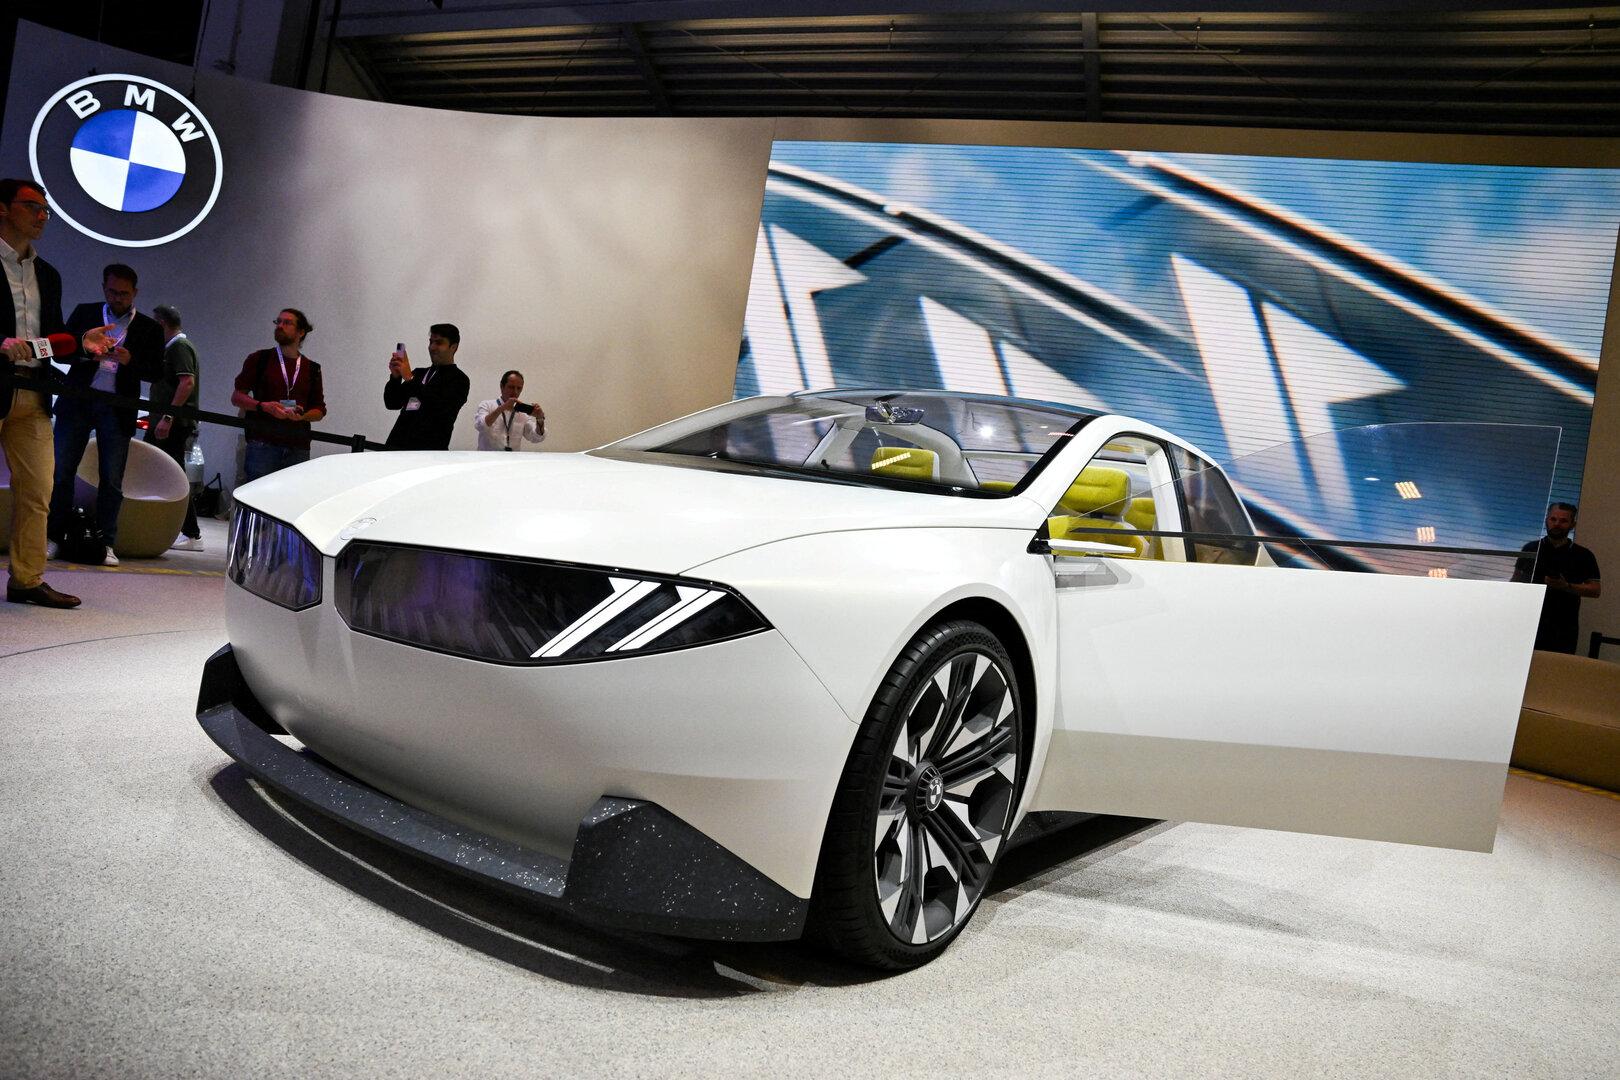 Kipppunkt bei Verbrennern erreicht: BMW setzt auf E-Autos